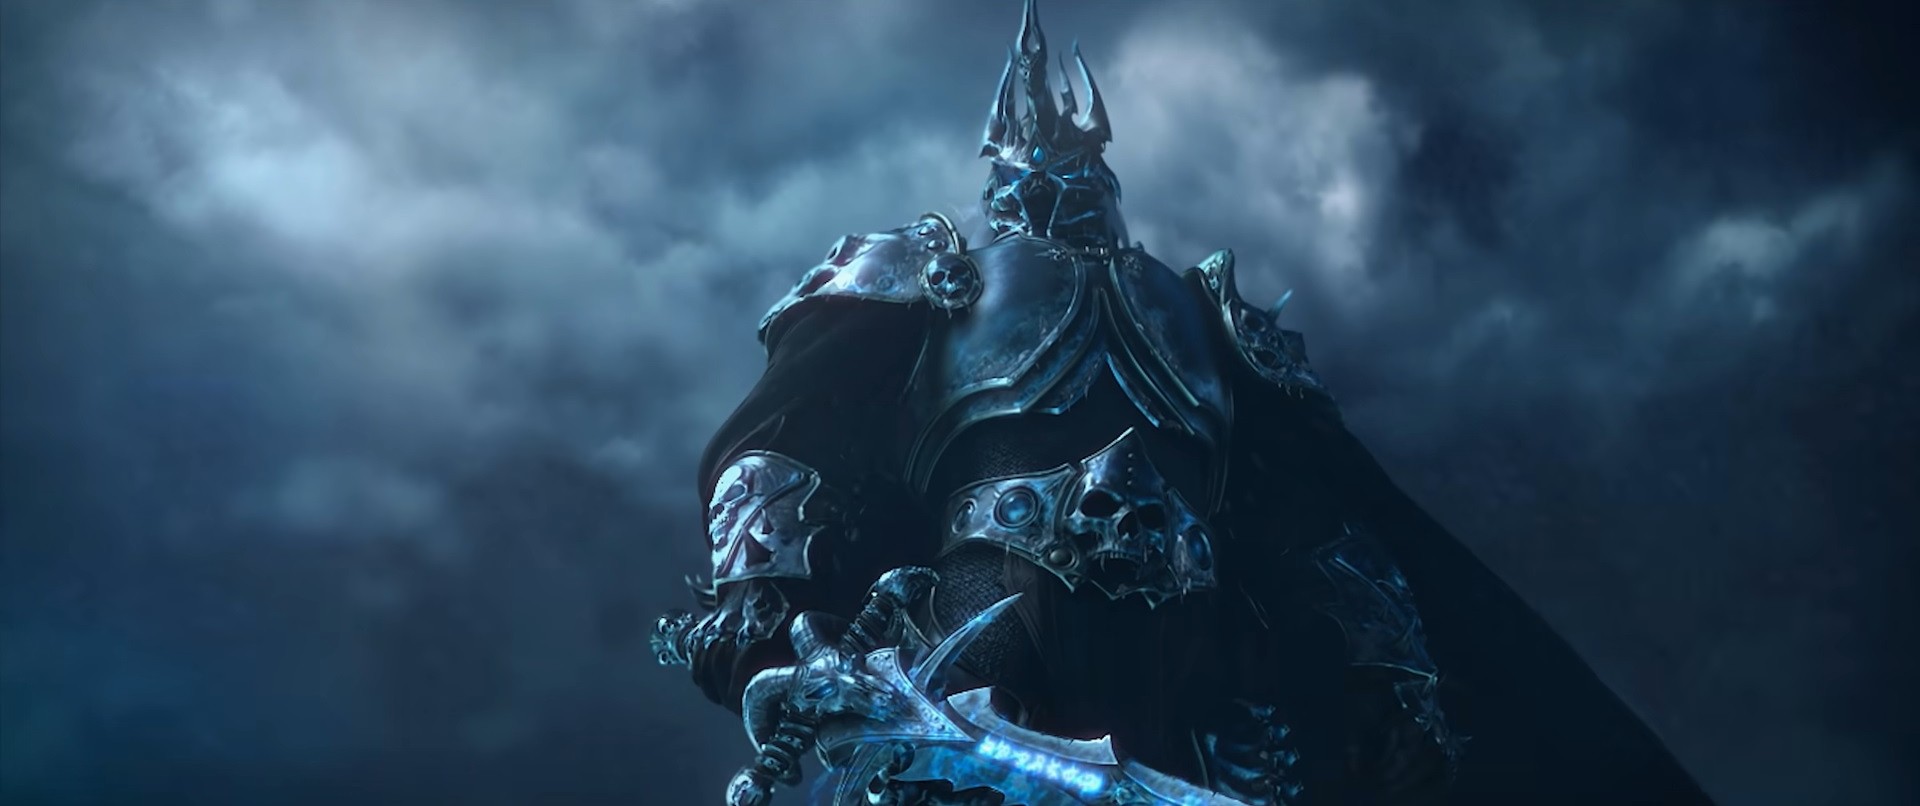 Lich King กลับมาอีกครั้งใน World of Warcraft: Wrath of the Lich King Classic